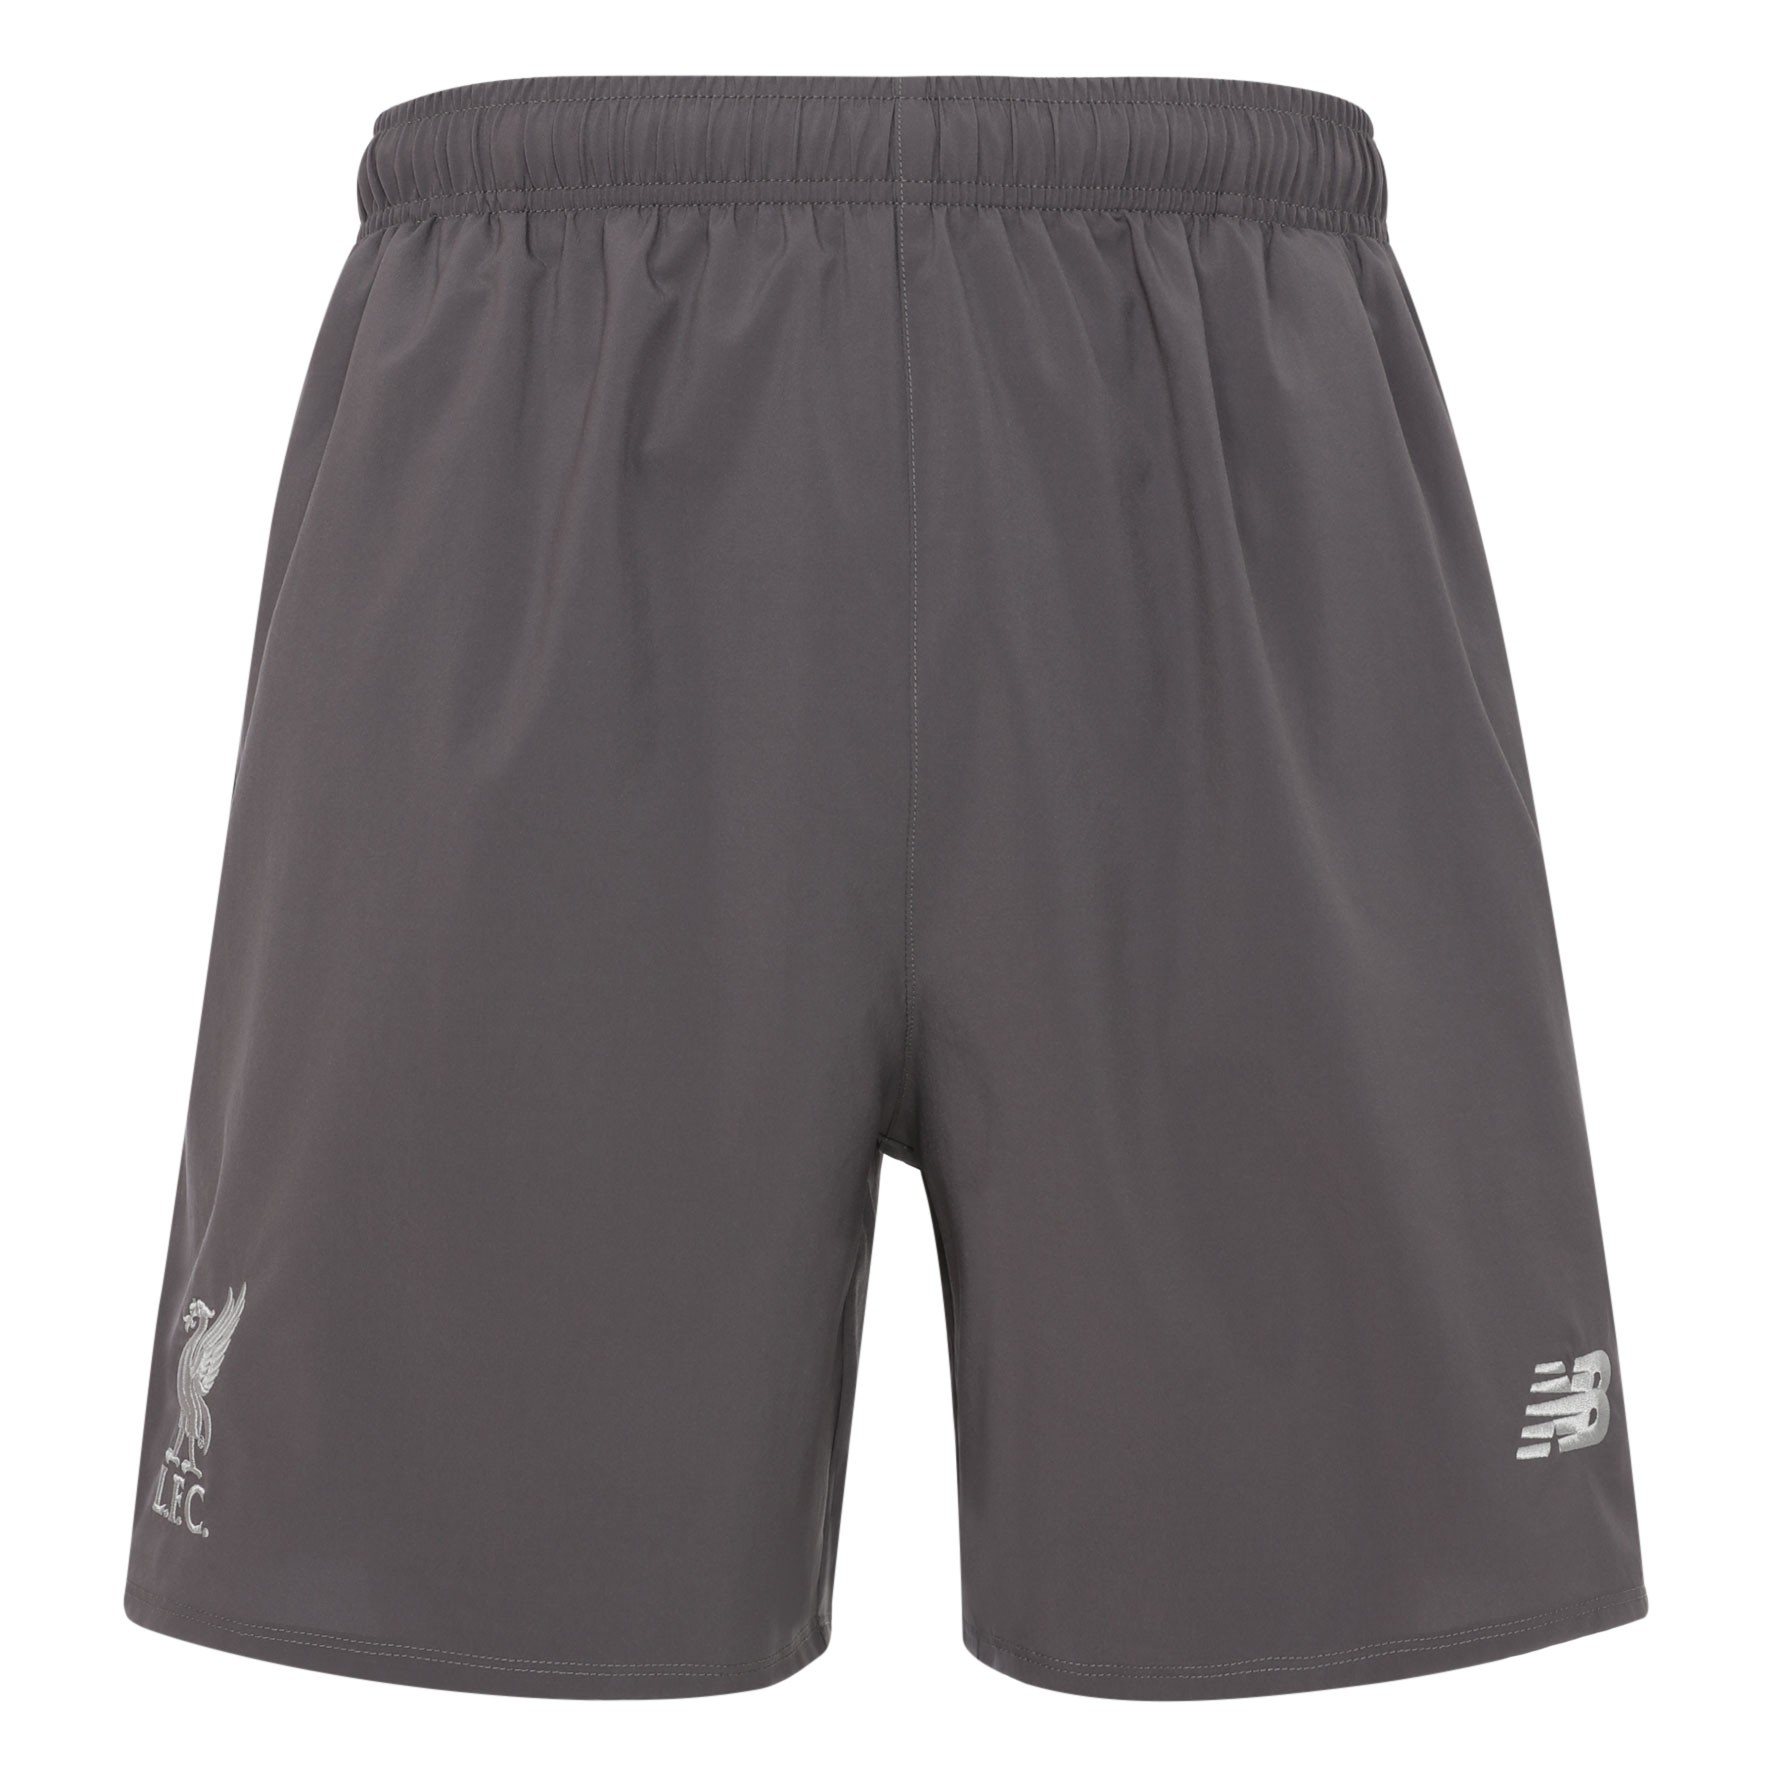 LFC Junior Grey Training Woven Shorts 18/19